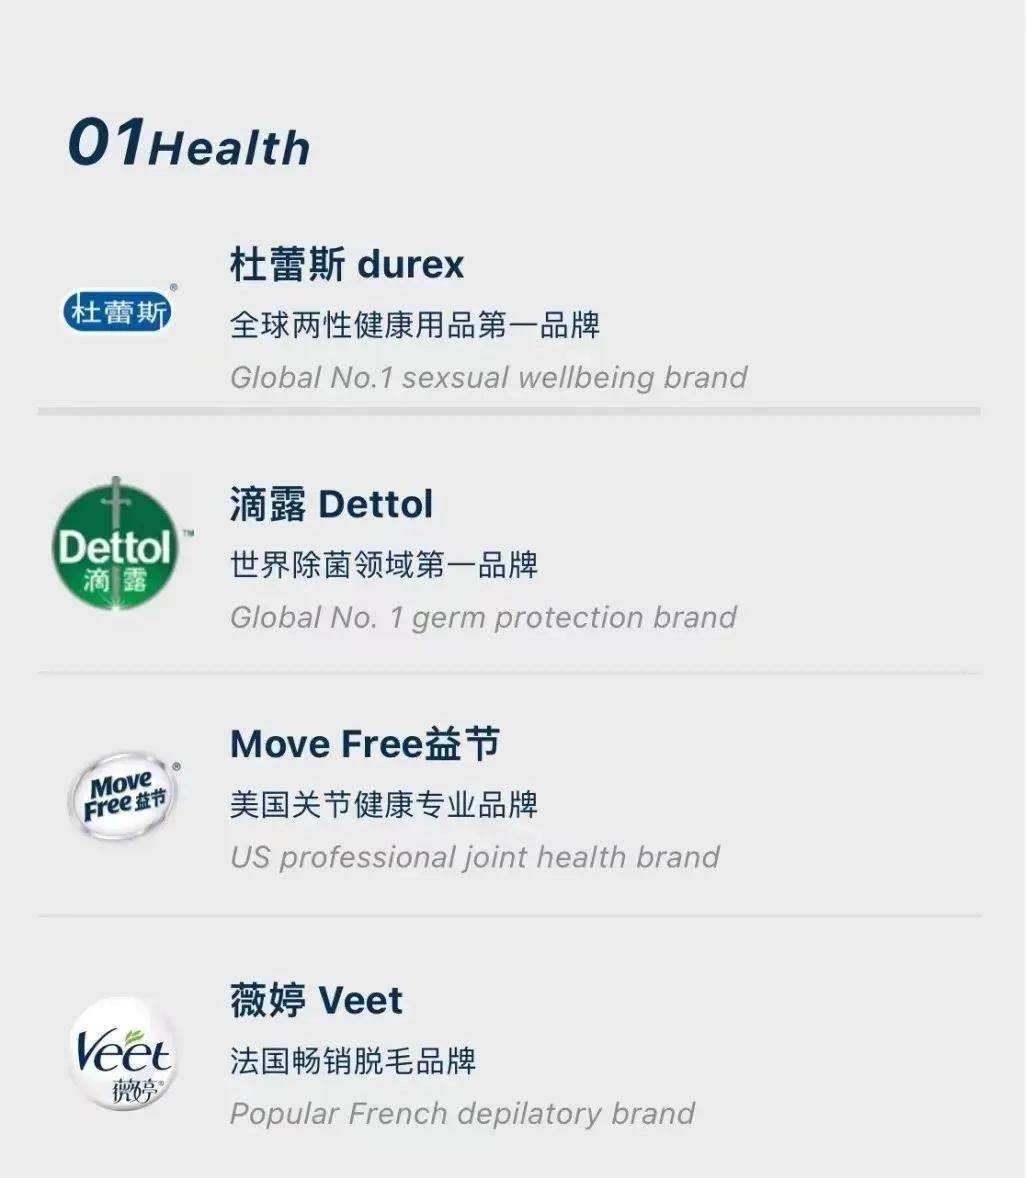 公司总部位于上海,在香港,广州,北京,台北,新加坡设有5个分公司,并在